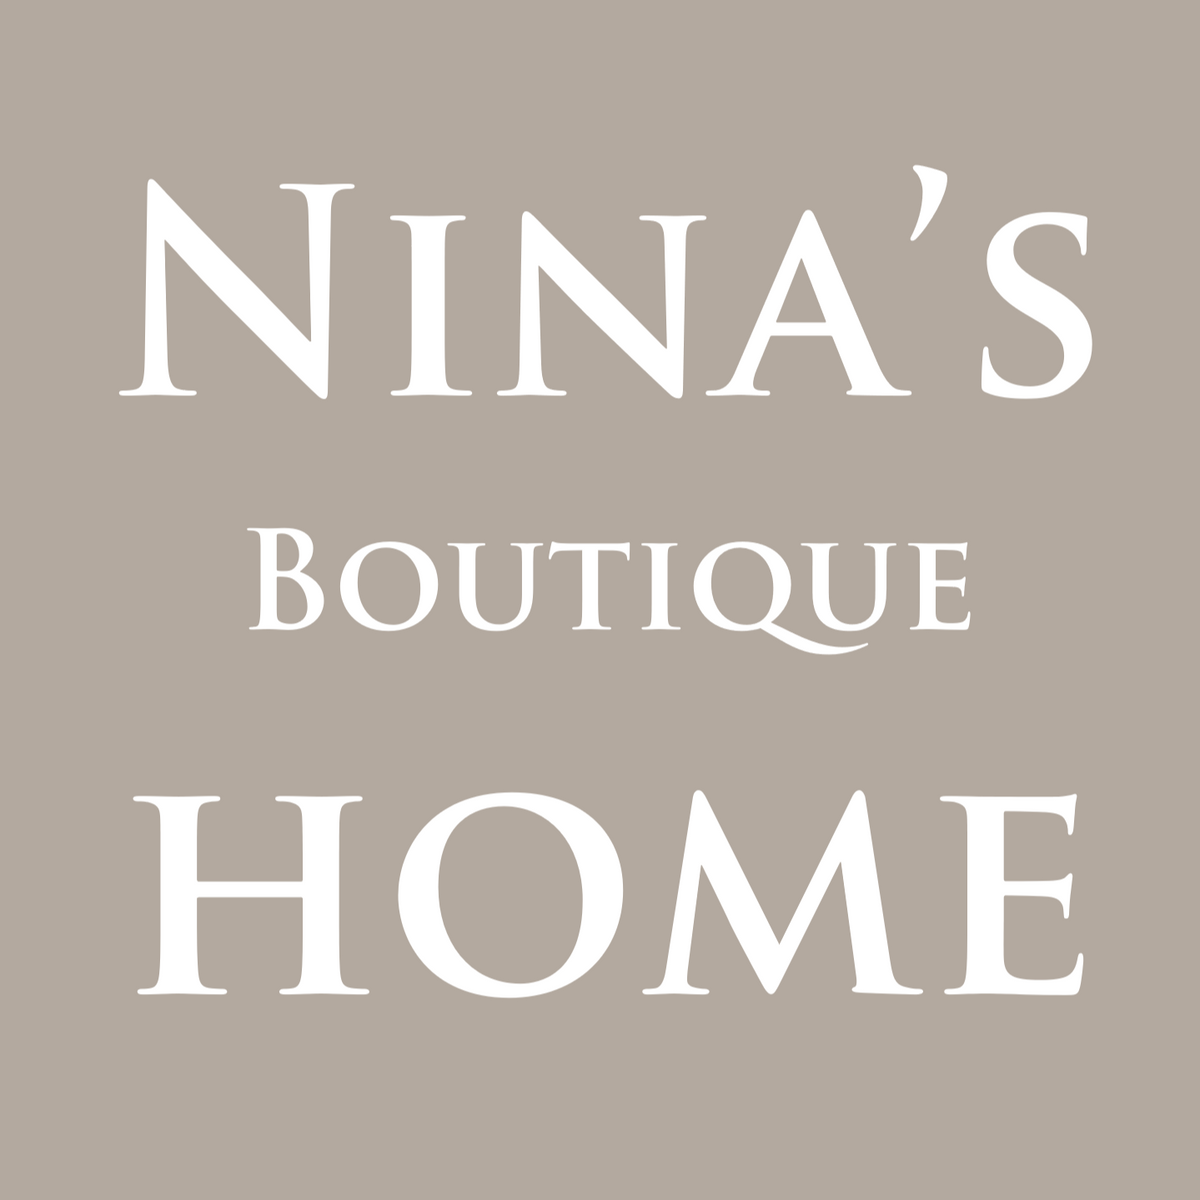 Nina's Boutique - Home